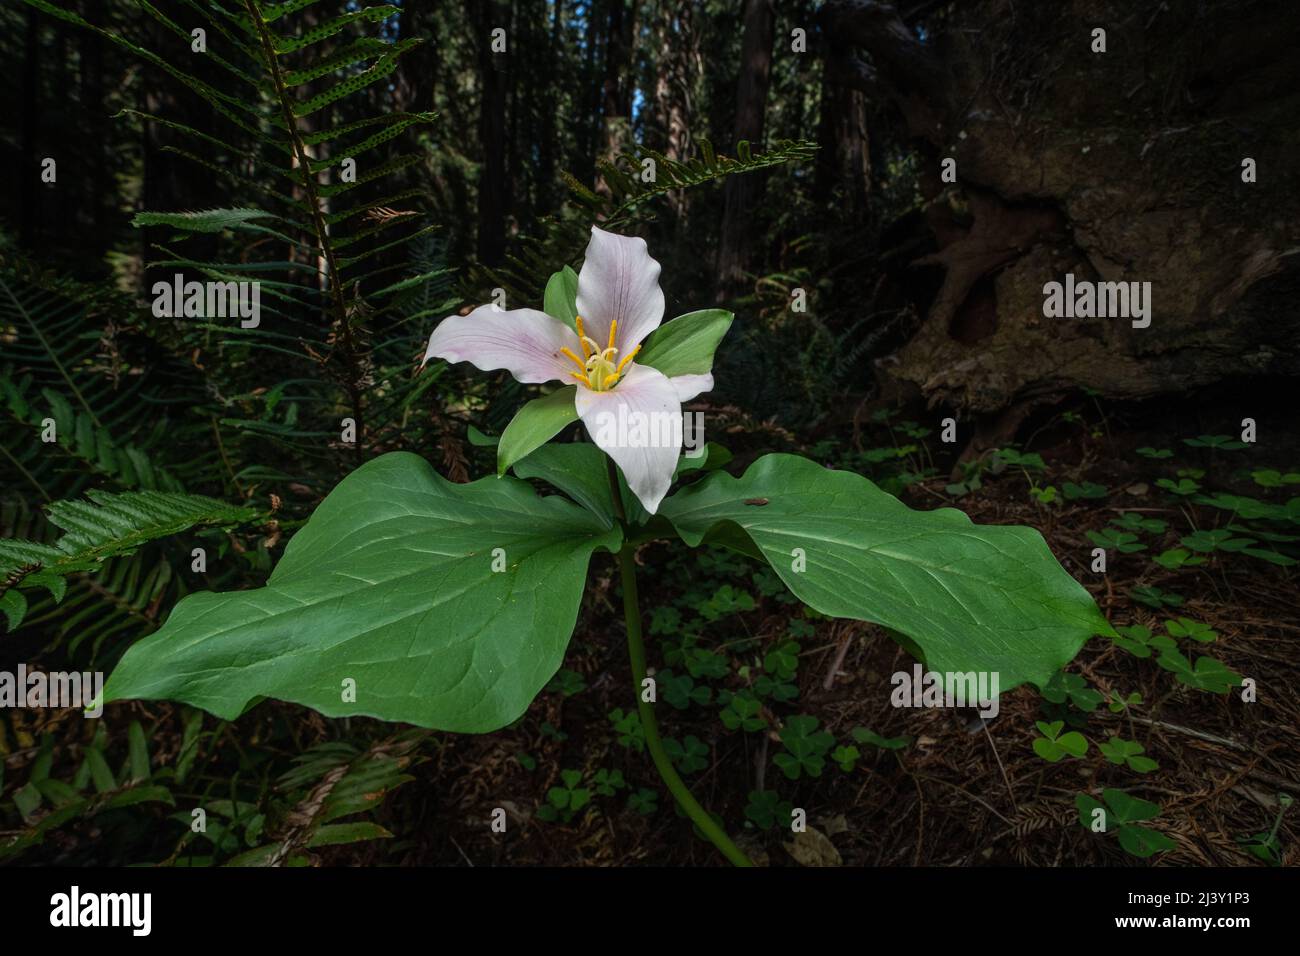 Trillium ovatum, das pazifische trillium, wächst und blüht auf dem Waldboden in einem alten Mammutbaumwald in Nordkalifornien. Stockfoto